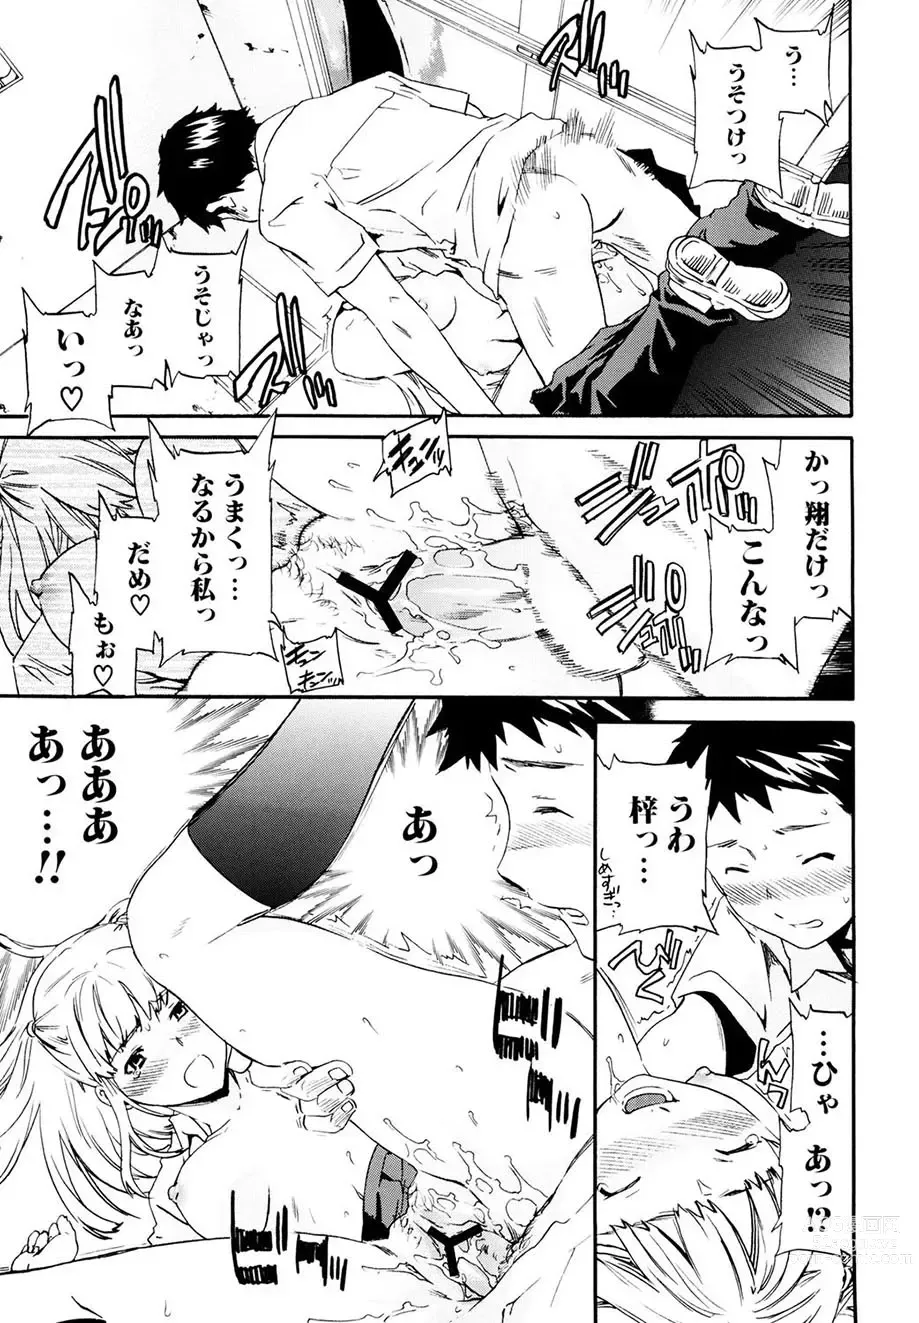 Page 144 of manga Shitai Kara Suru no